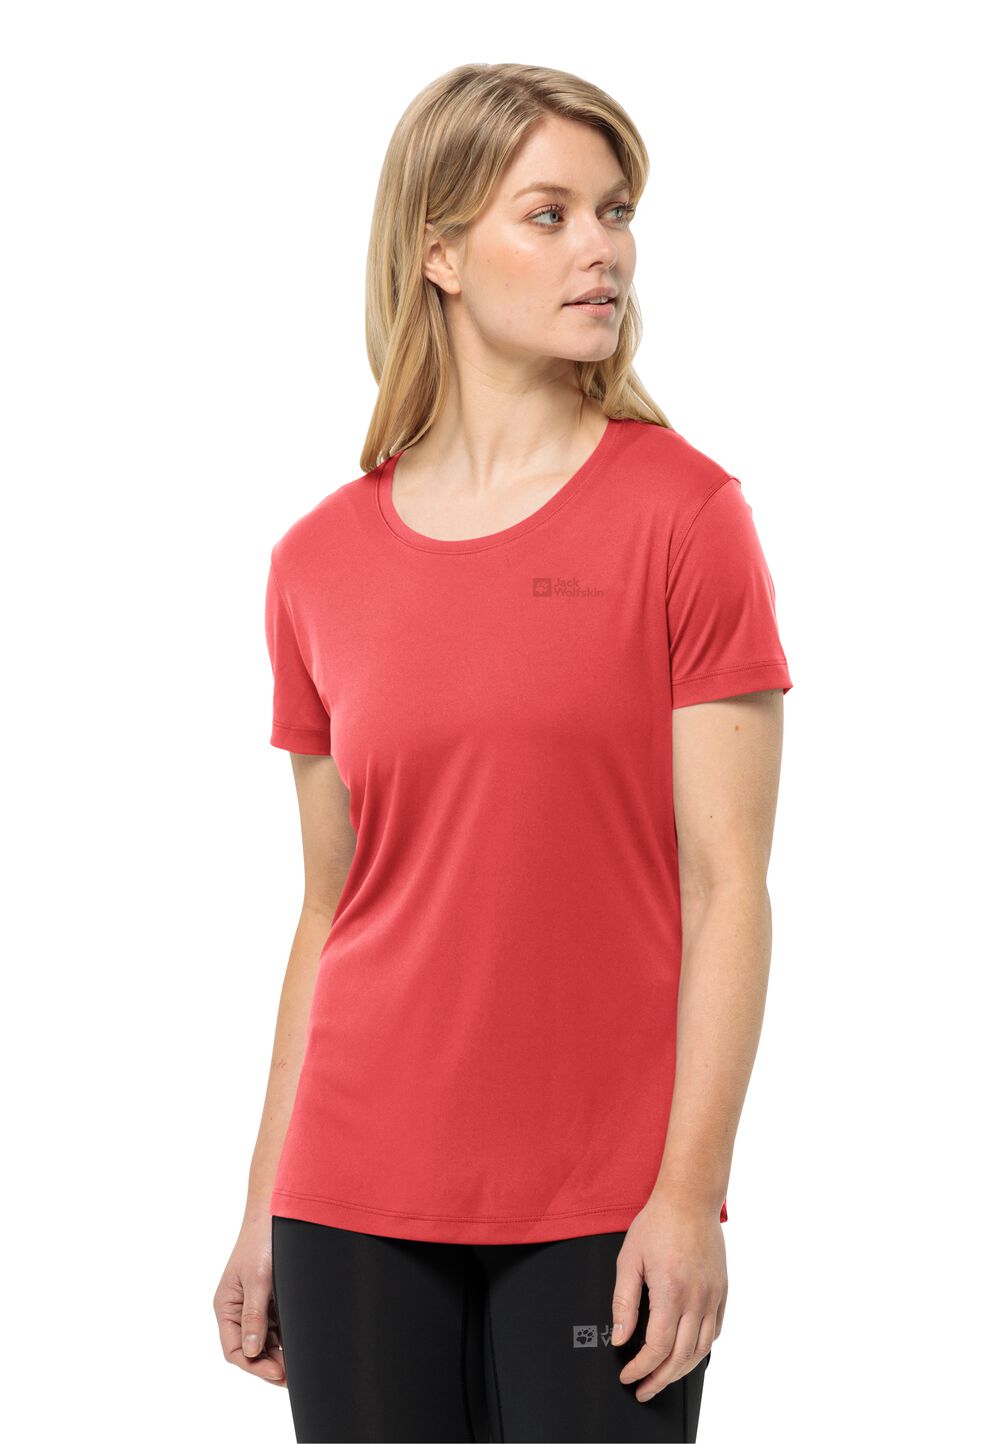 Jack Wolfskin Tech T-Shirt Women Functioneel shirt Dames XXL rood vibrant red